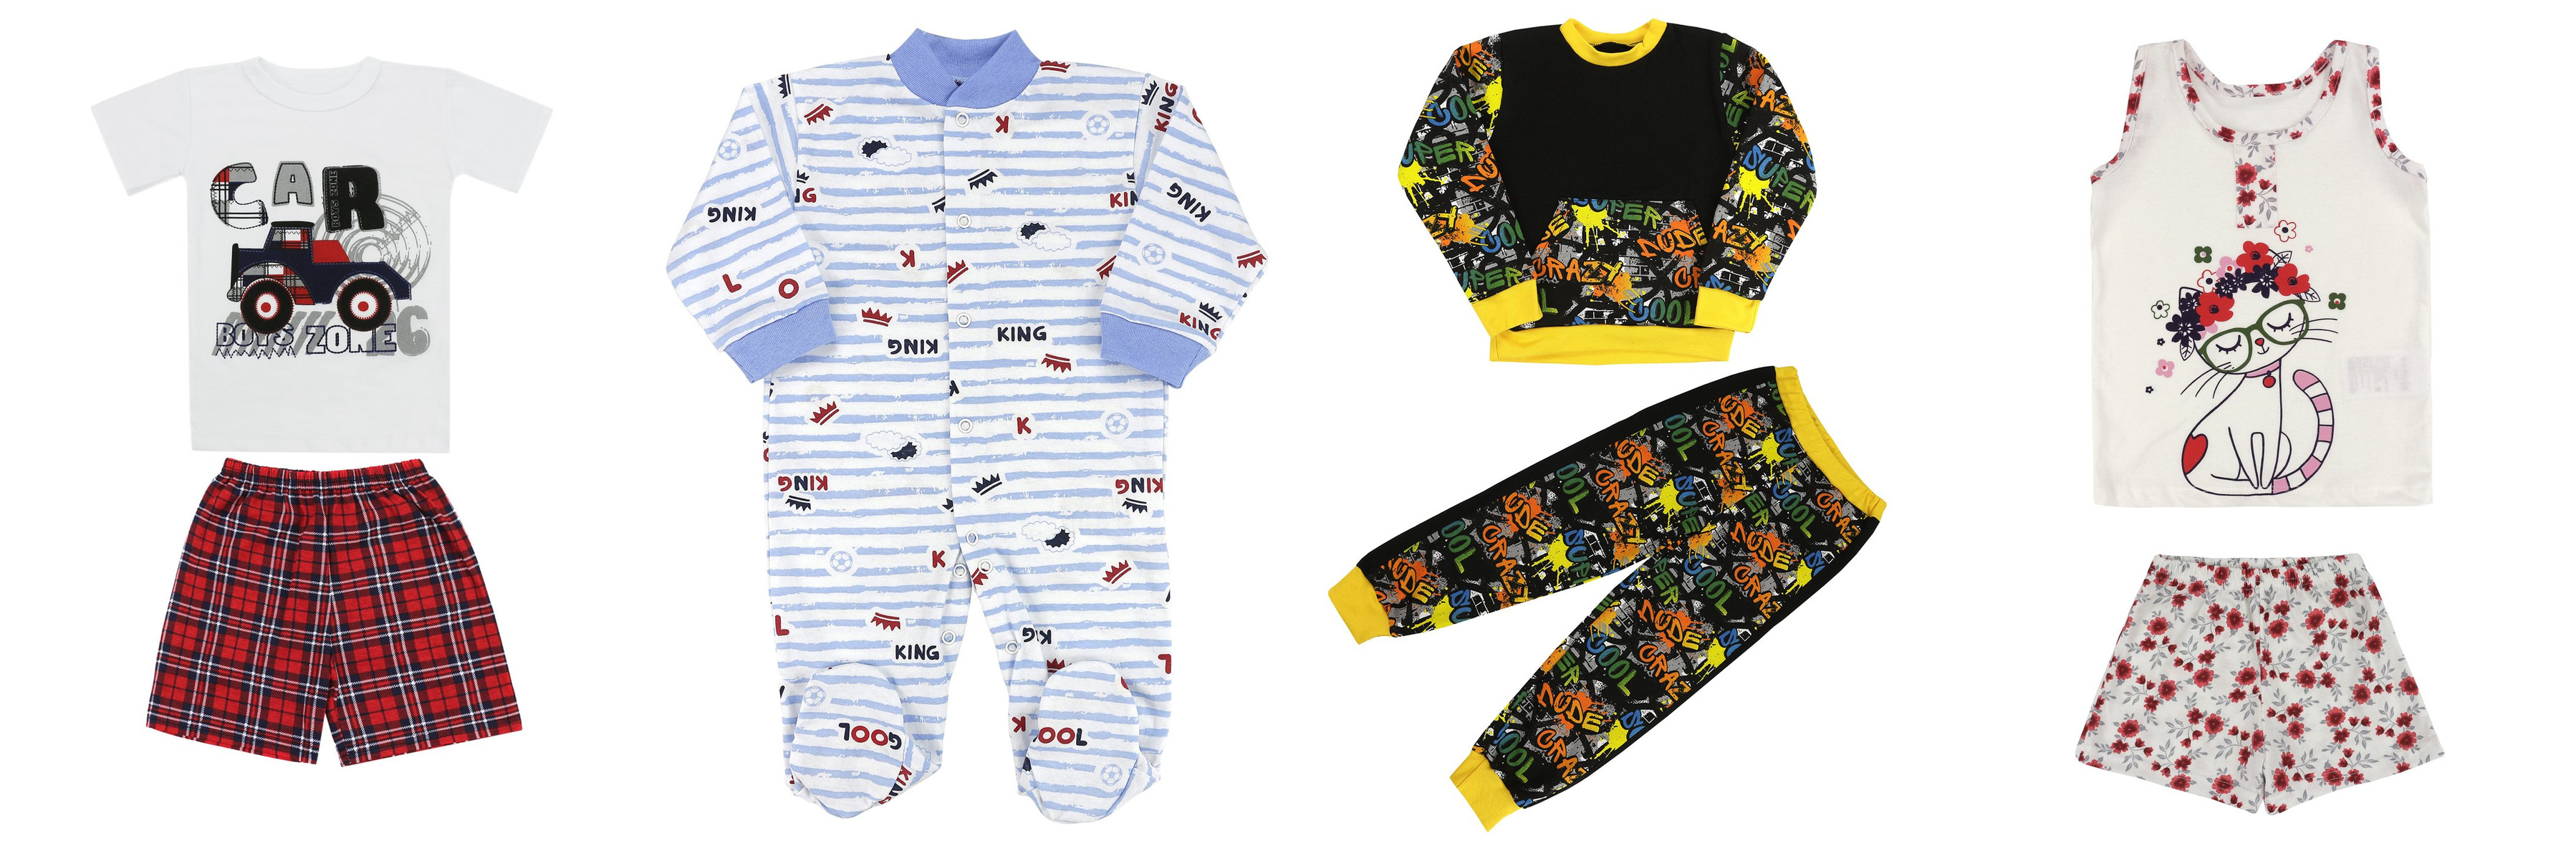 Детская одежда оптом на OPEN-PRO – наряды для новорожденных и ясельной группы от бренда ТекСтильно 